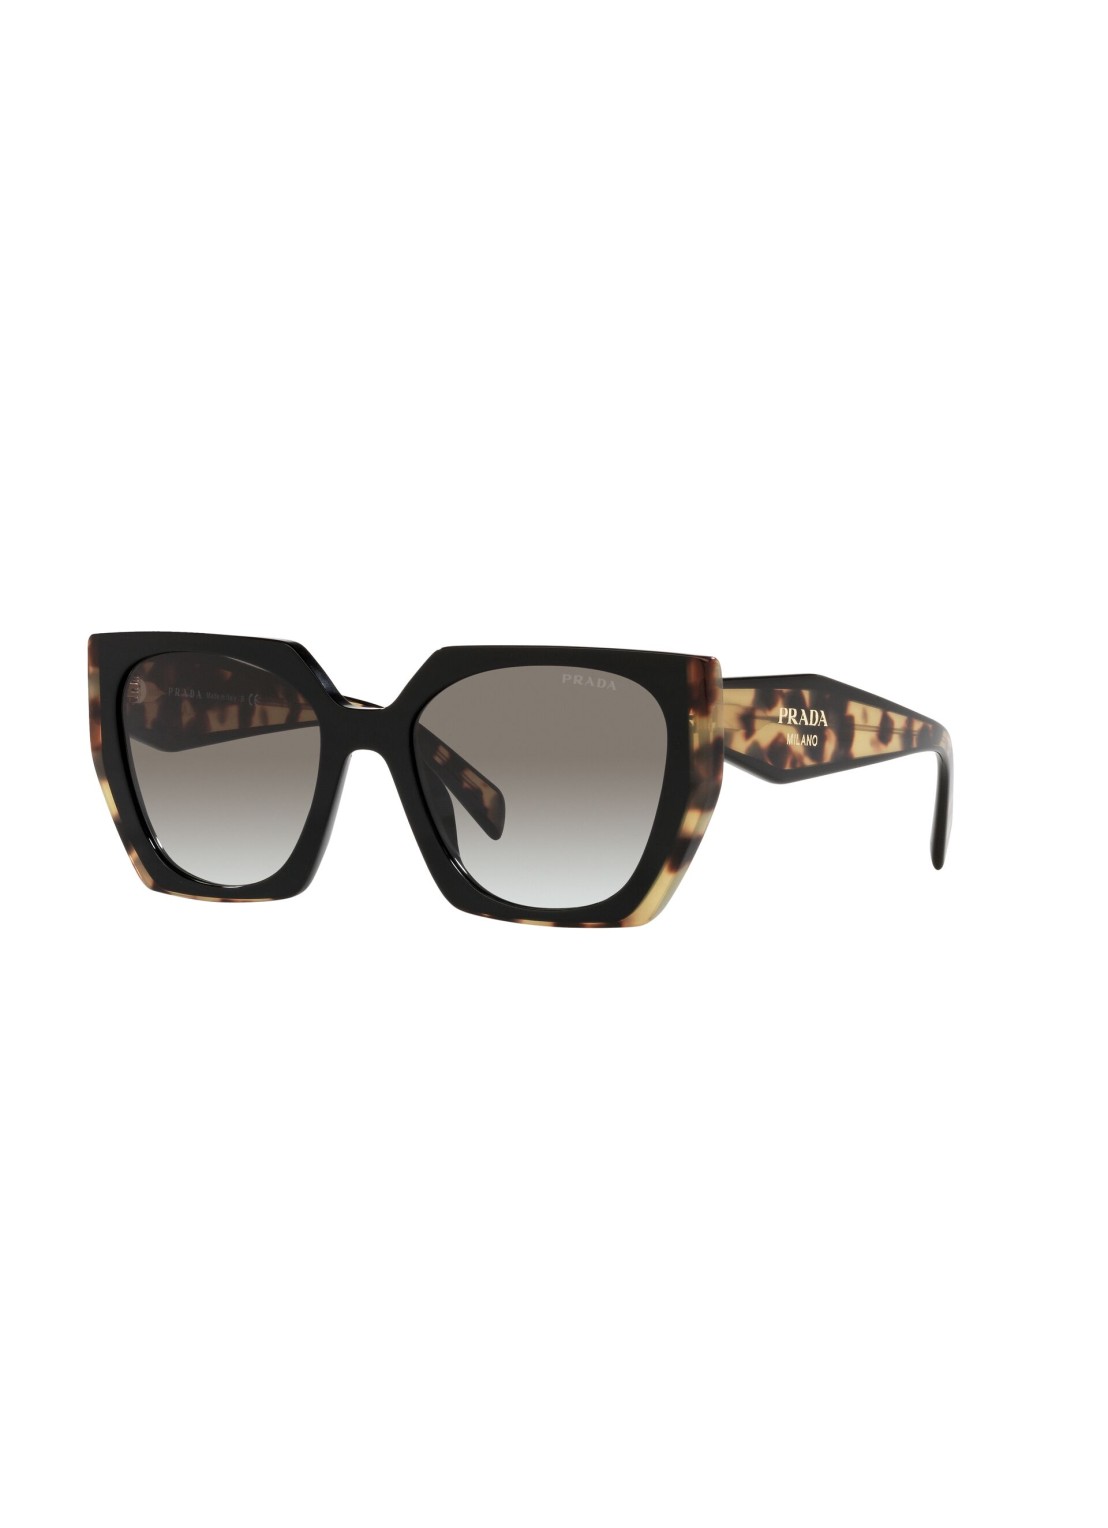 Gafas prada sunglasses woman 0pr15ws 0pr15ws 3890a7 talla transparente
 